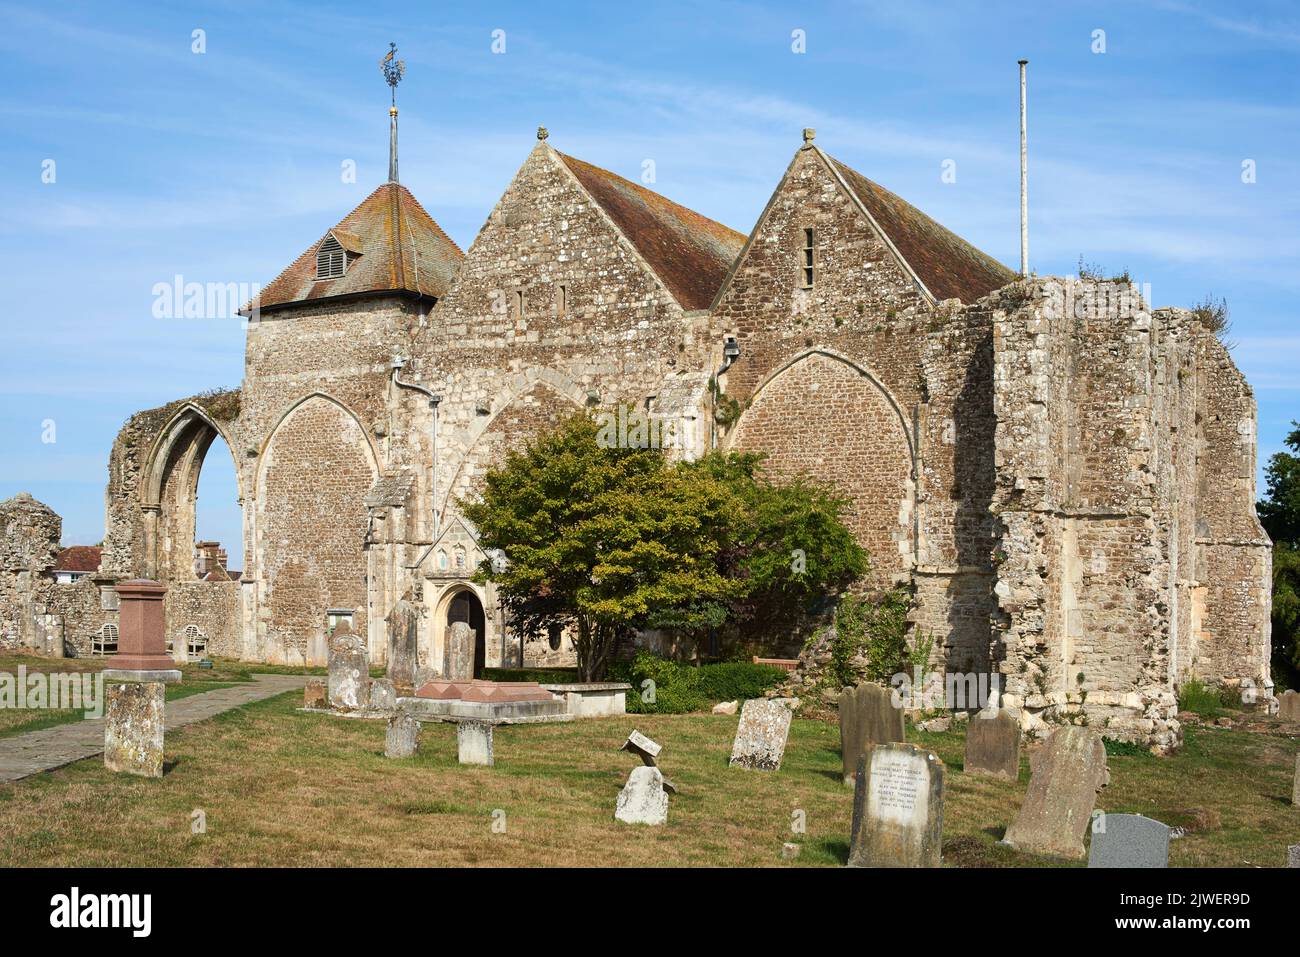 Die historische mittelalterliche Kirche des Märtyrers St. Thomas in der Stadt Winchelsea, East Sussex, Südostengland Stockfoto